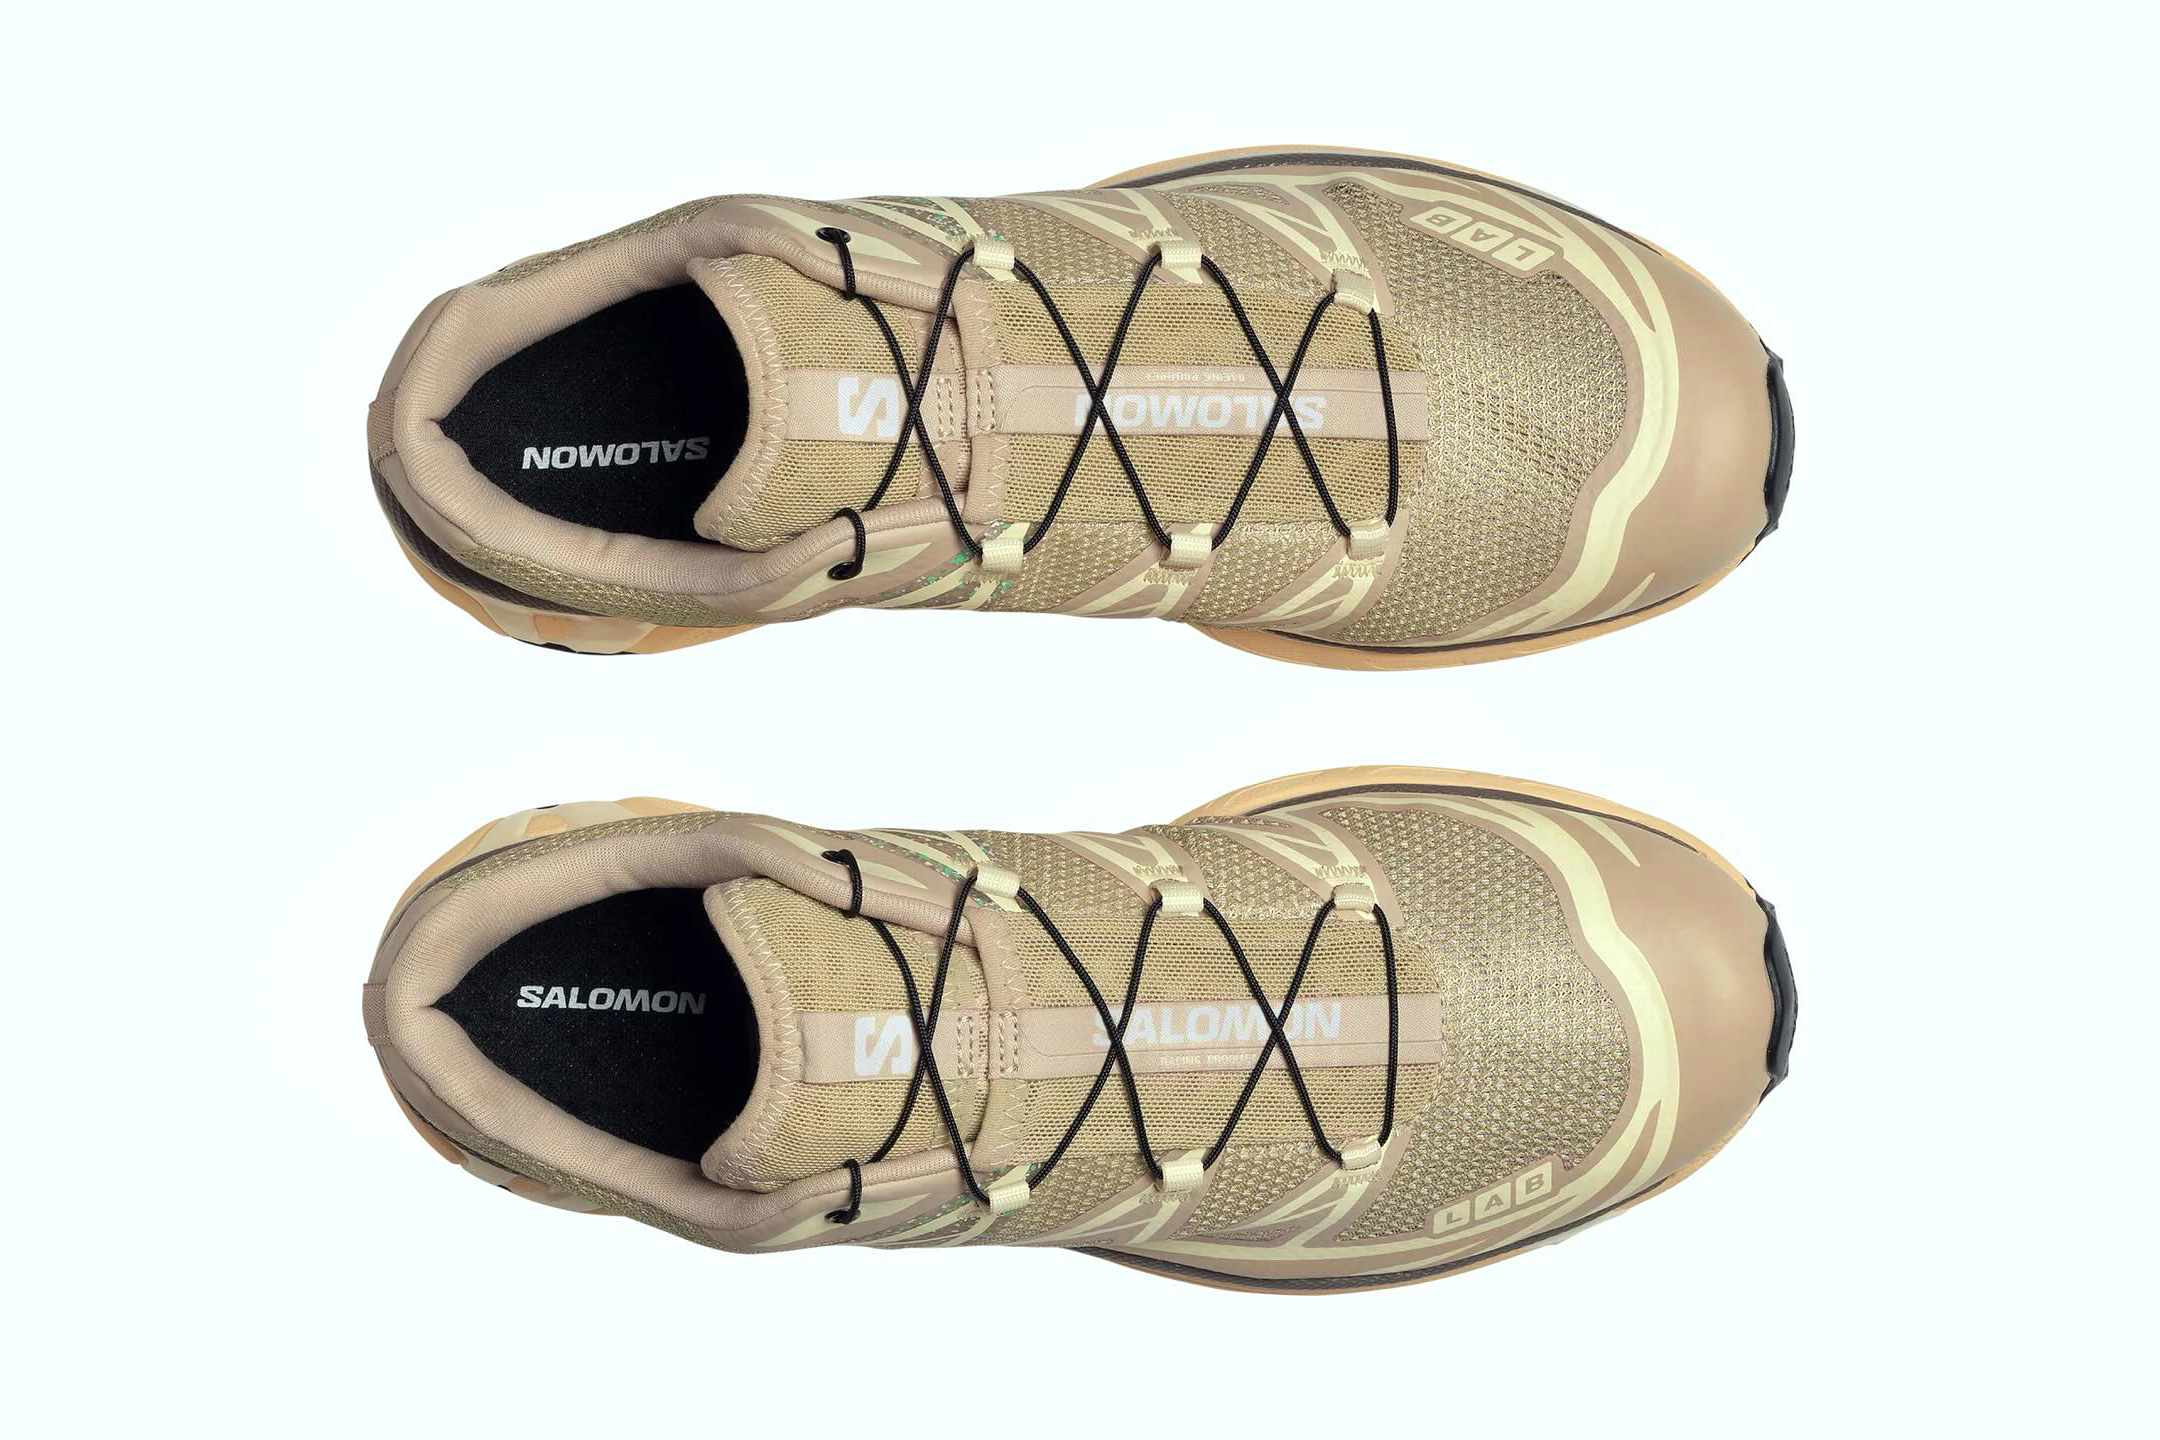 Salomon's XT-6 Sneaker Is Beautiful in Springtime Pastel